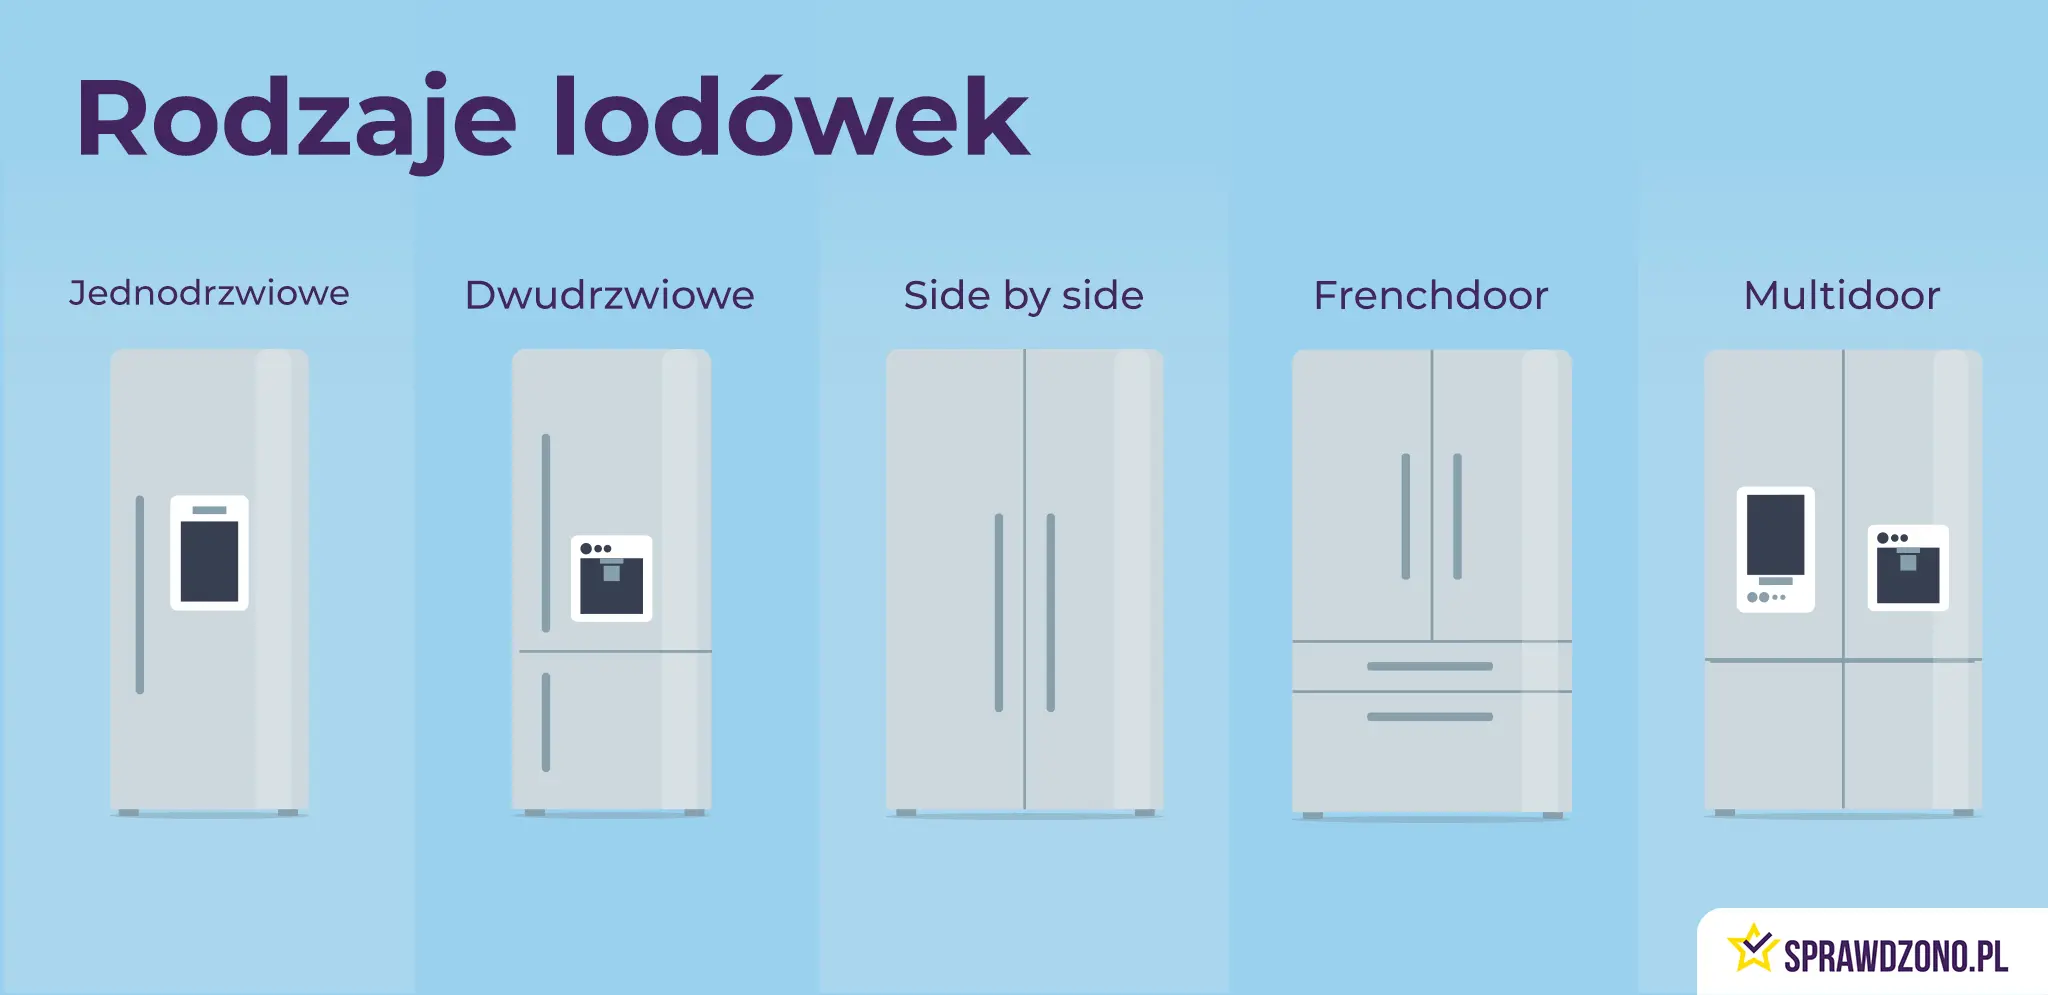 Infografika przedstawiająca wygląd różnych rodzajów lodówek: jednodrzwiowej, dwudrzwiowej, side by side, frenchdoor i multidoor